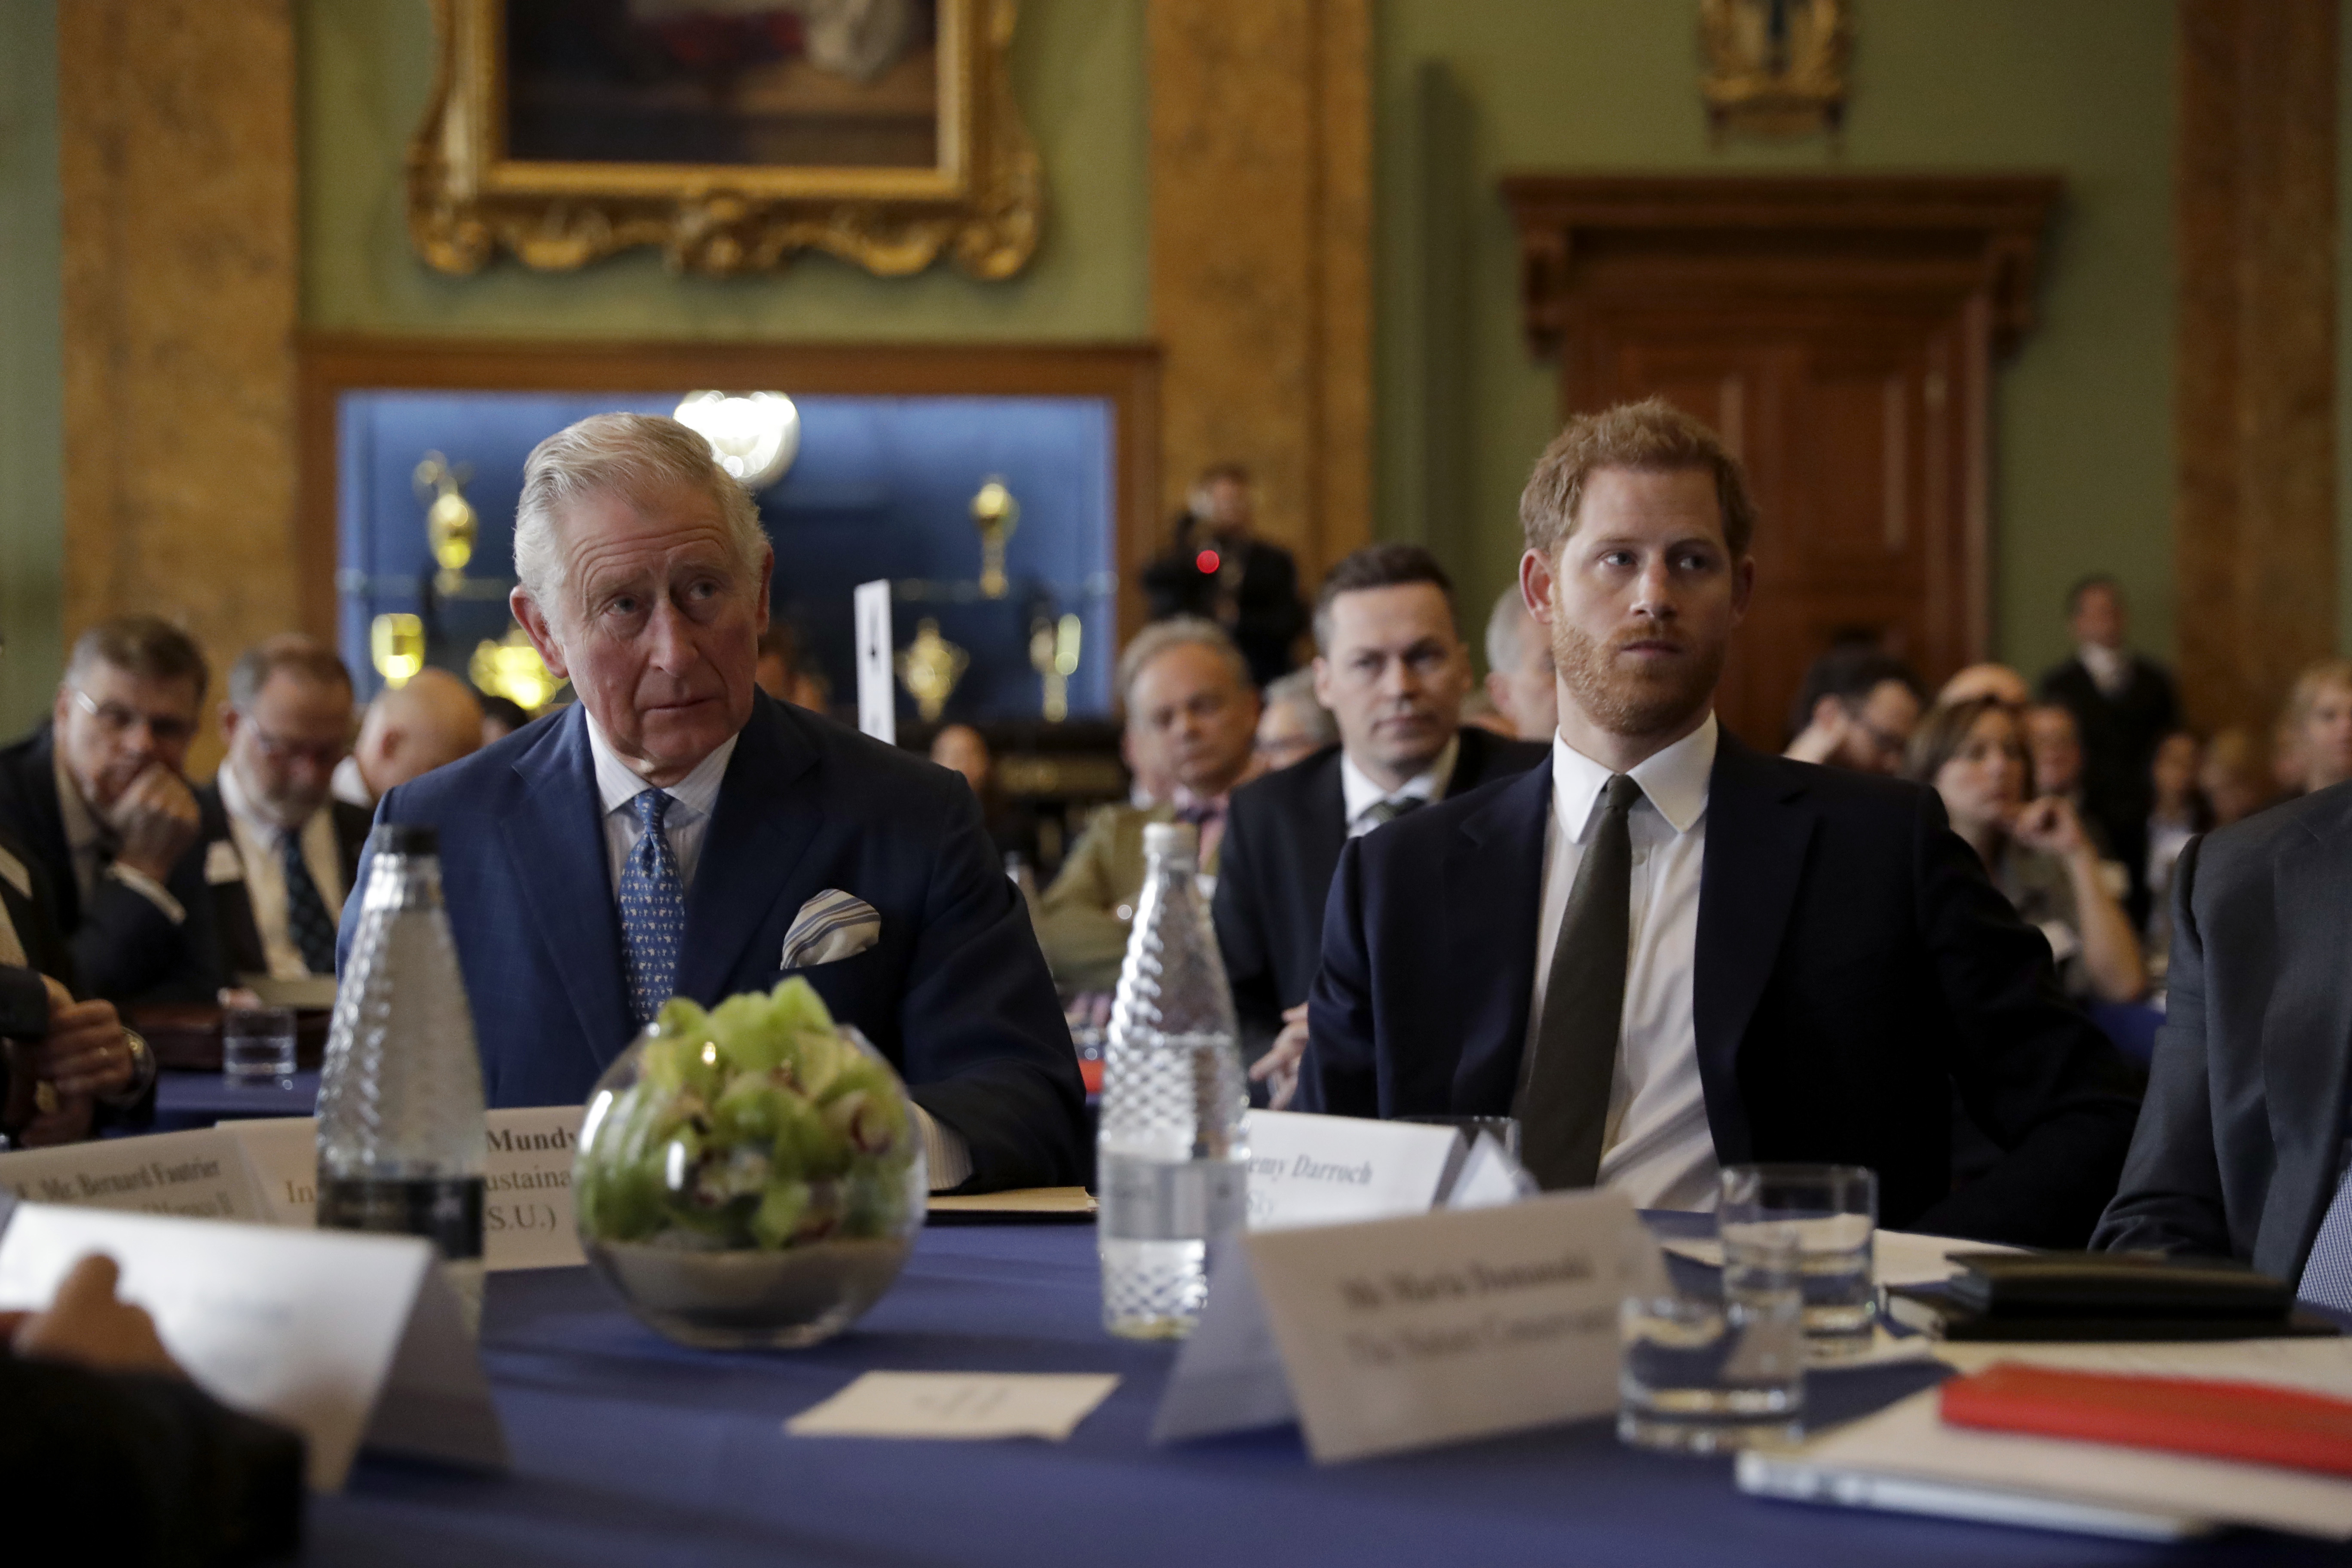 El rey Charles III y el príncipe Harry en la reunión del "Año Internacional del Arrecife" 2018 en Londres, Inglaterra, el 14 de febrero de 2018 | Fuente: Getty Images